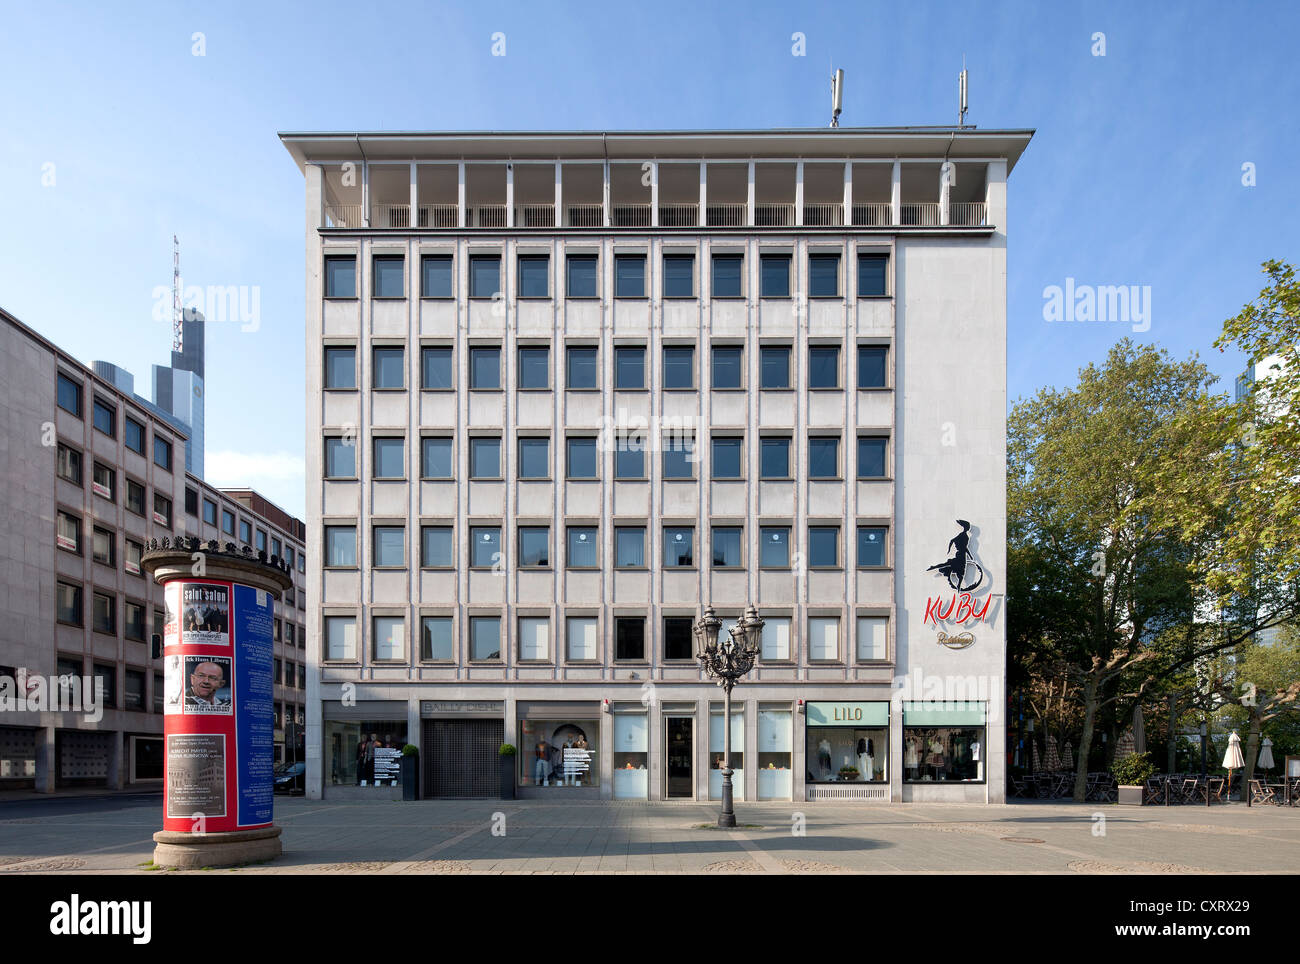 Immeuble de bureaux sur place Opernplatz, Frankfurt am Main, Hesse, Germany, Europe, PublicGround Banque D'Images